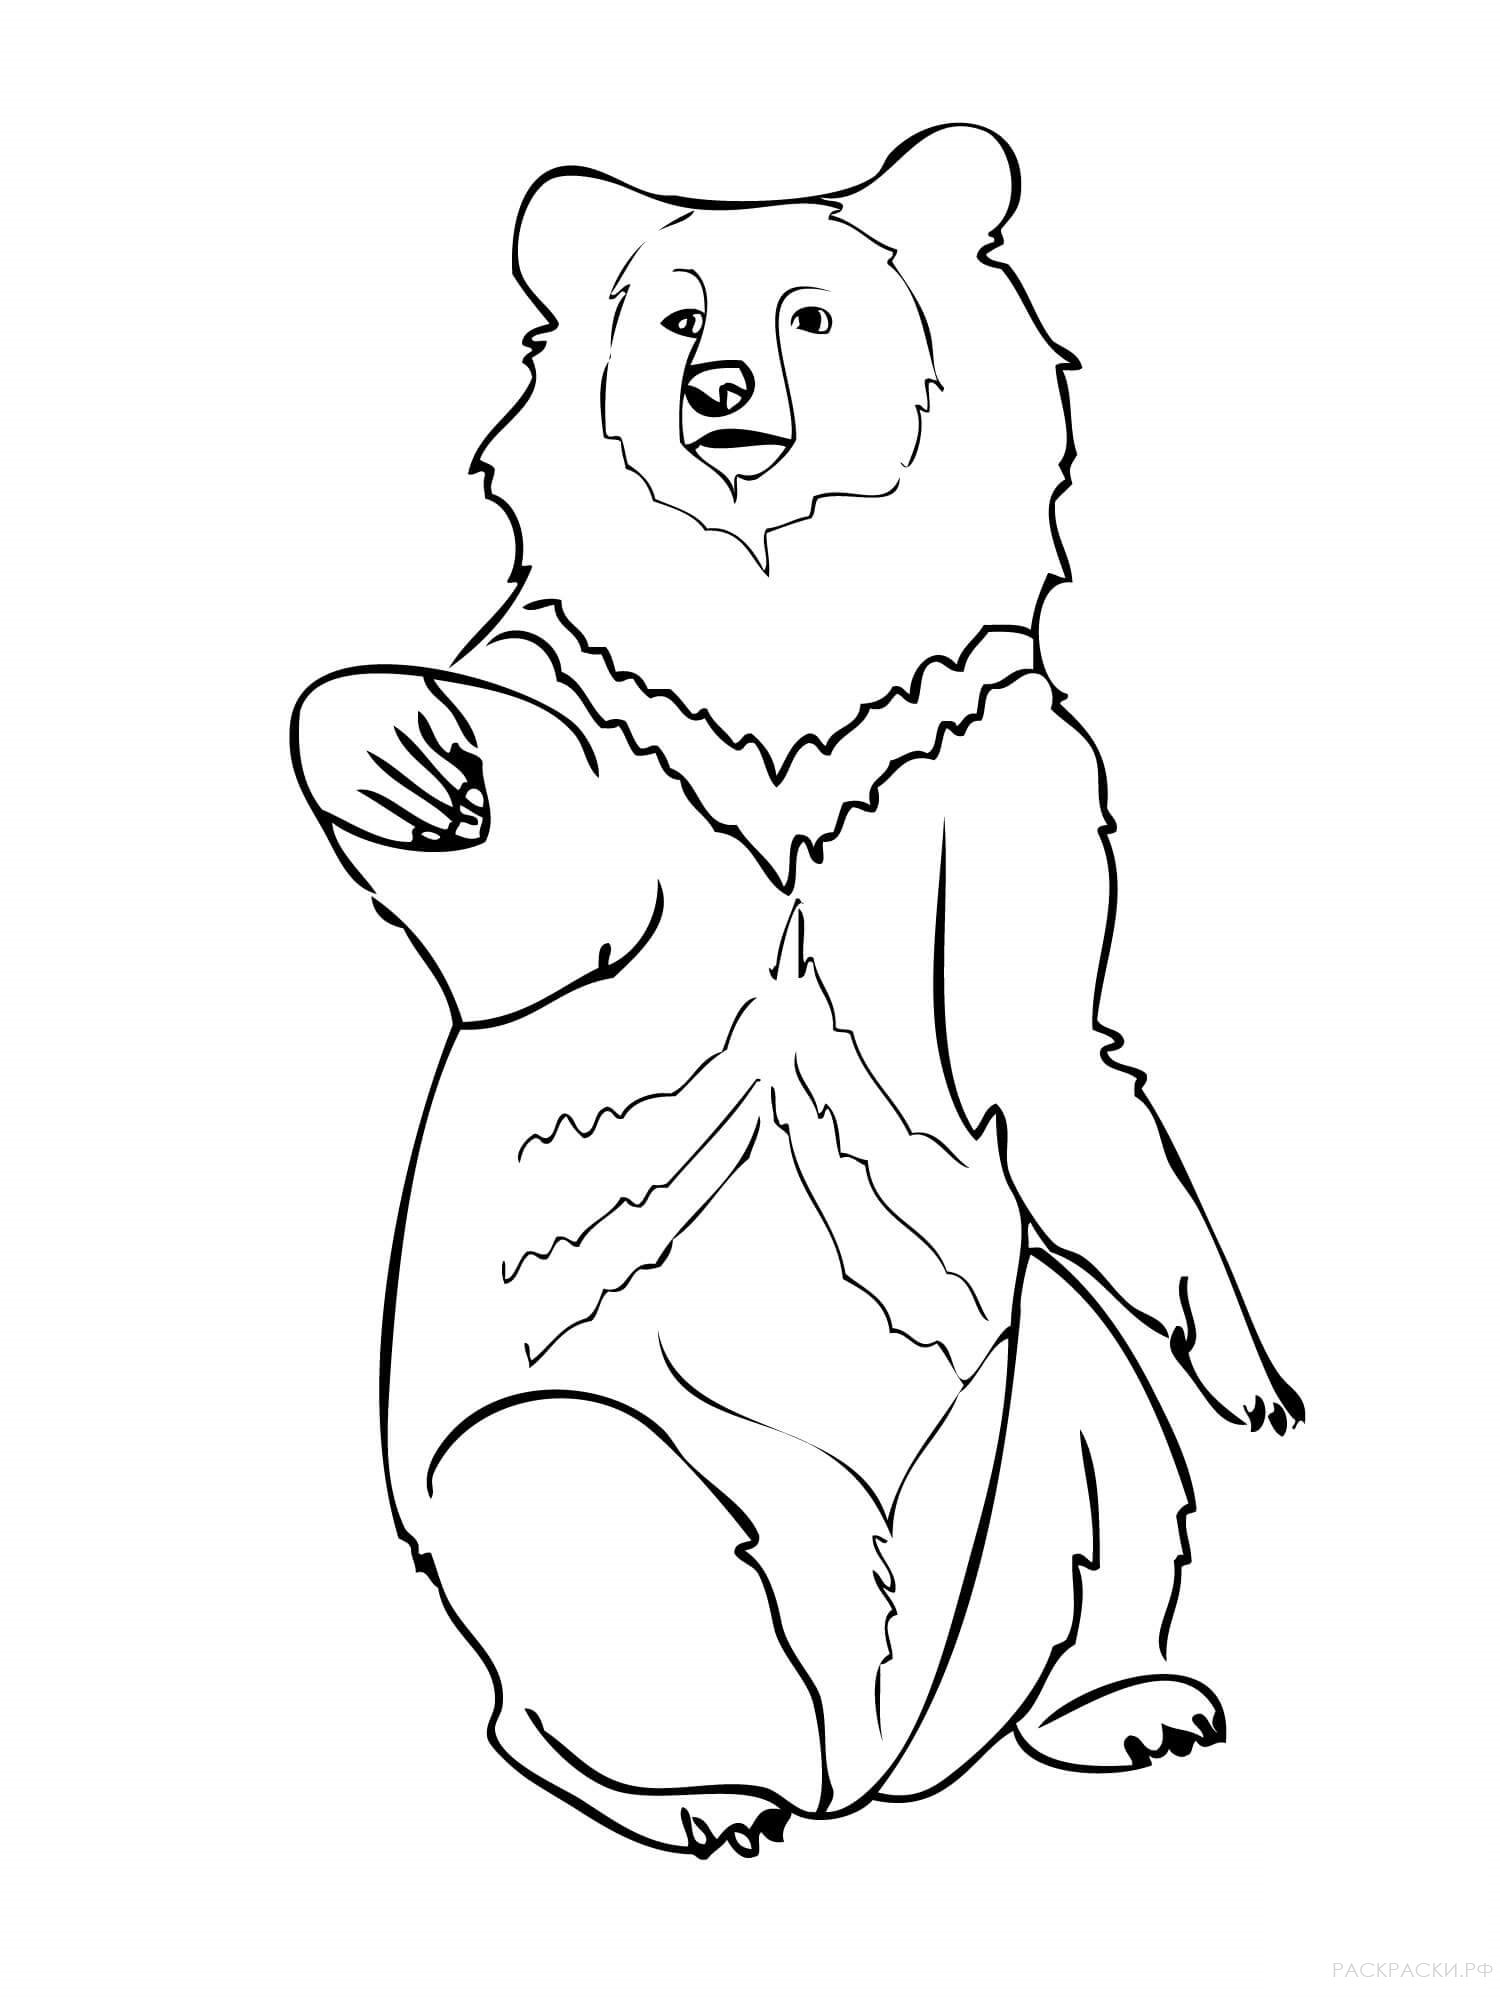 Гималайский медведь раскраска для детей